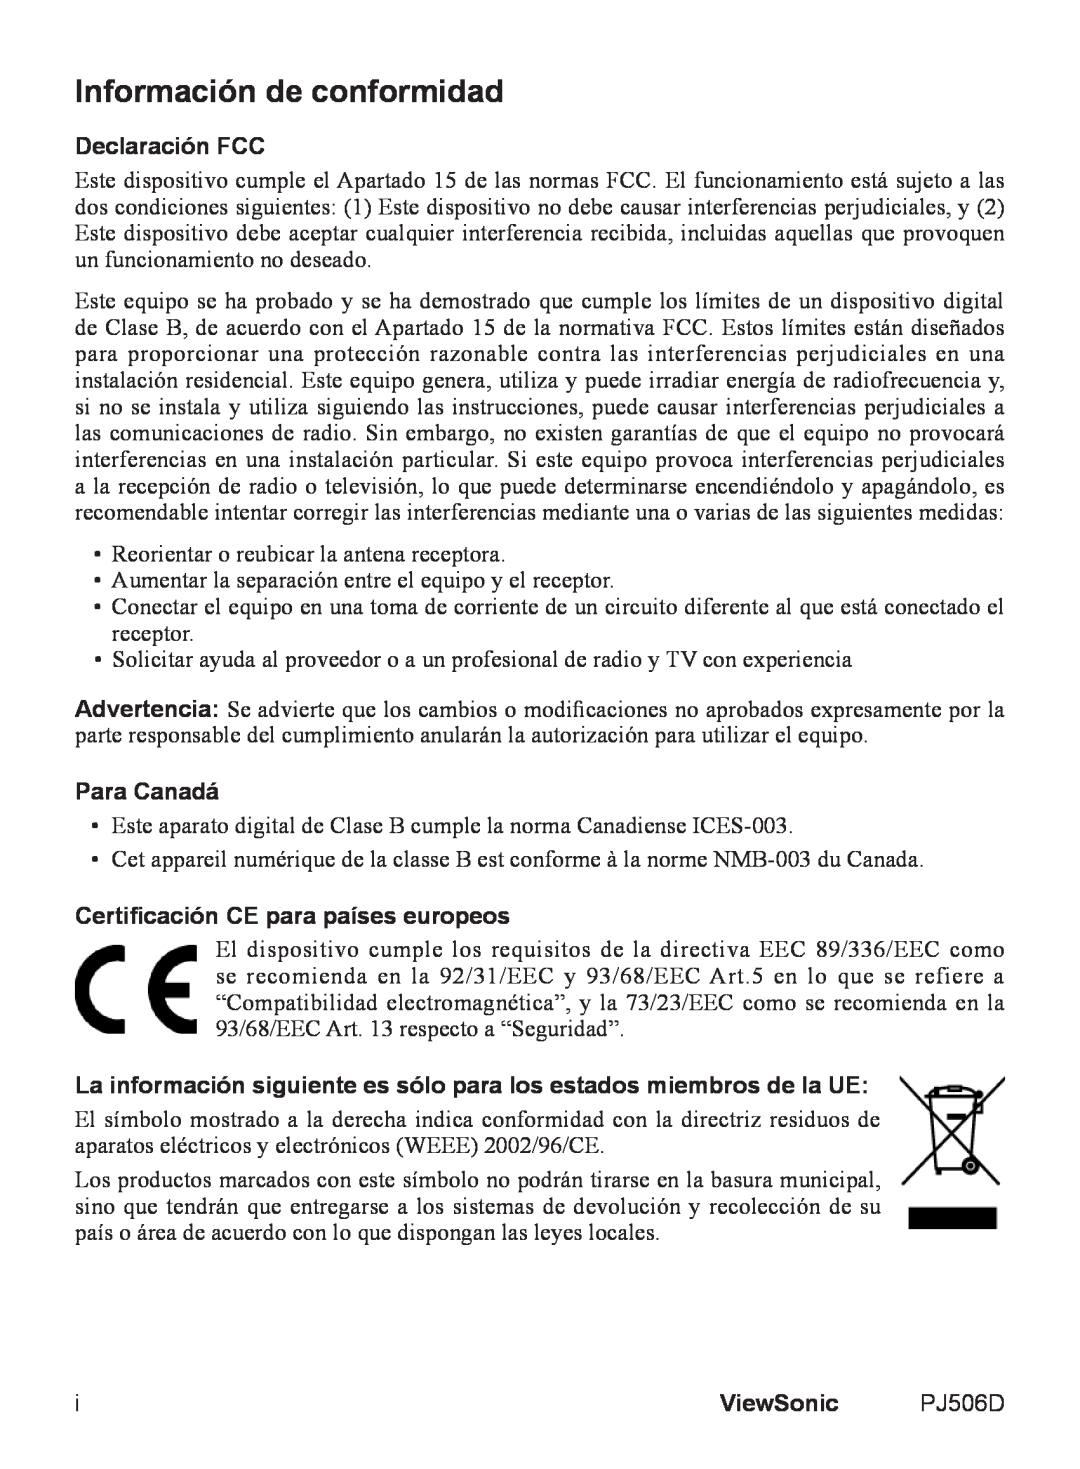 ViewSonic VS11452 manual Información de conformidad, Declaración FCC, Para Canadá, Certificación CE para países europeos 